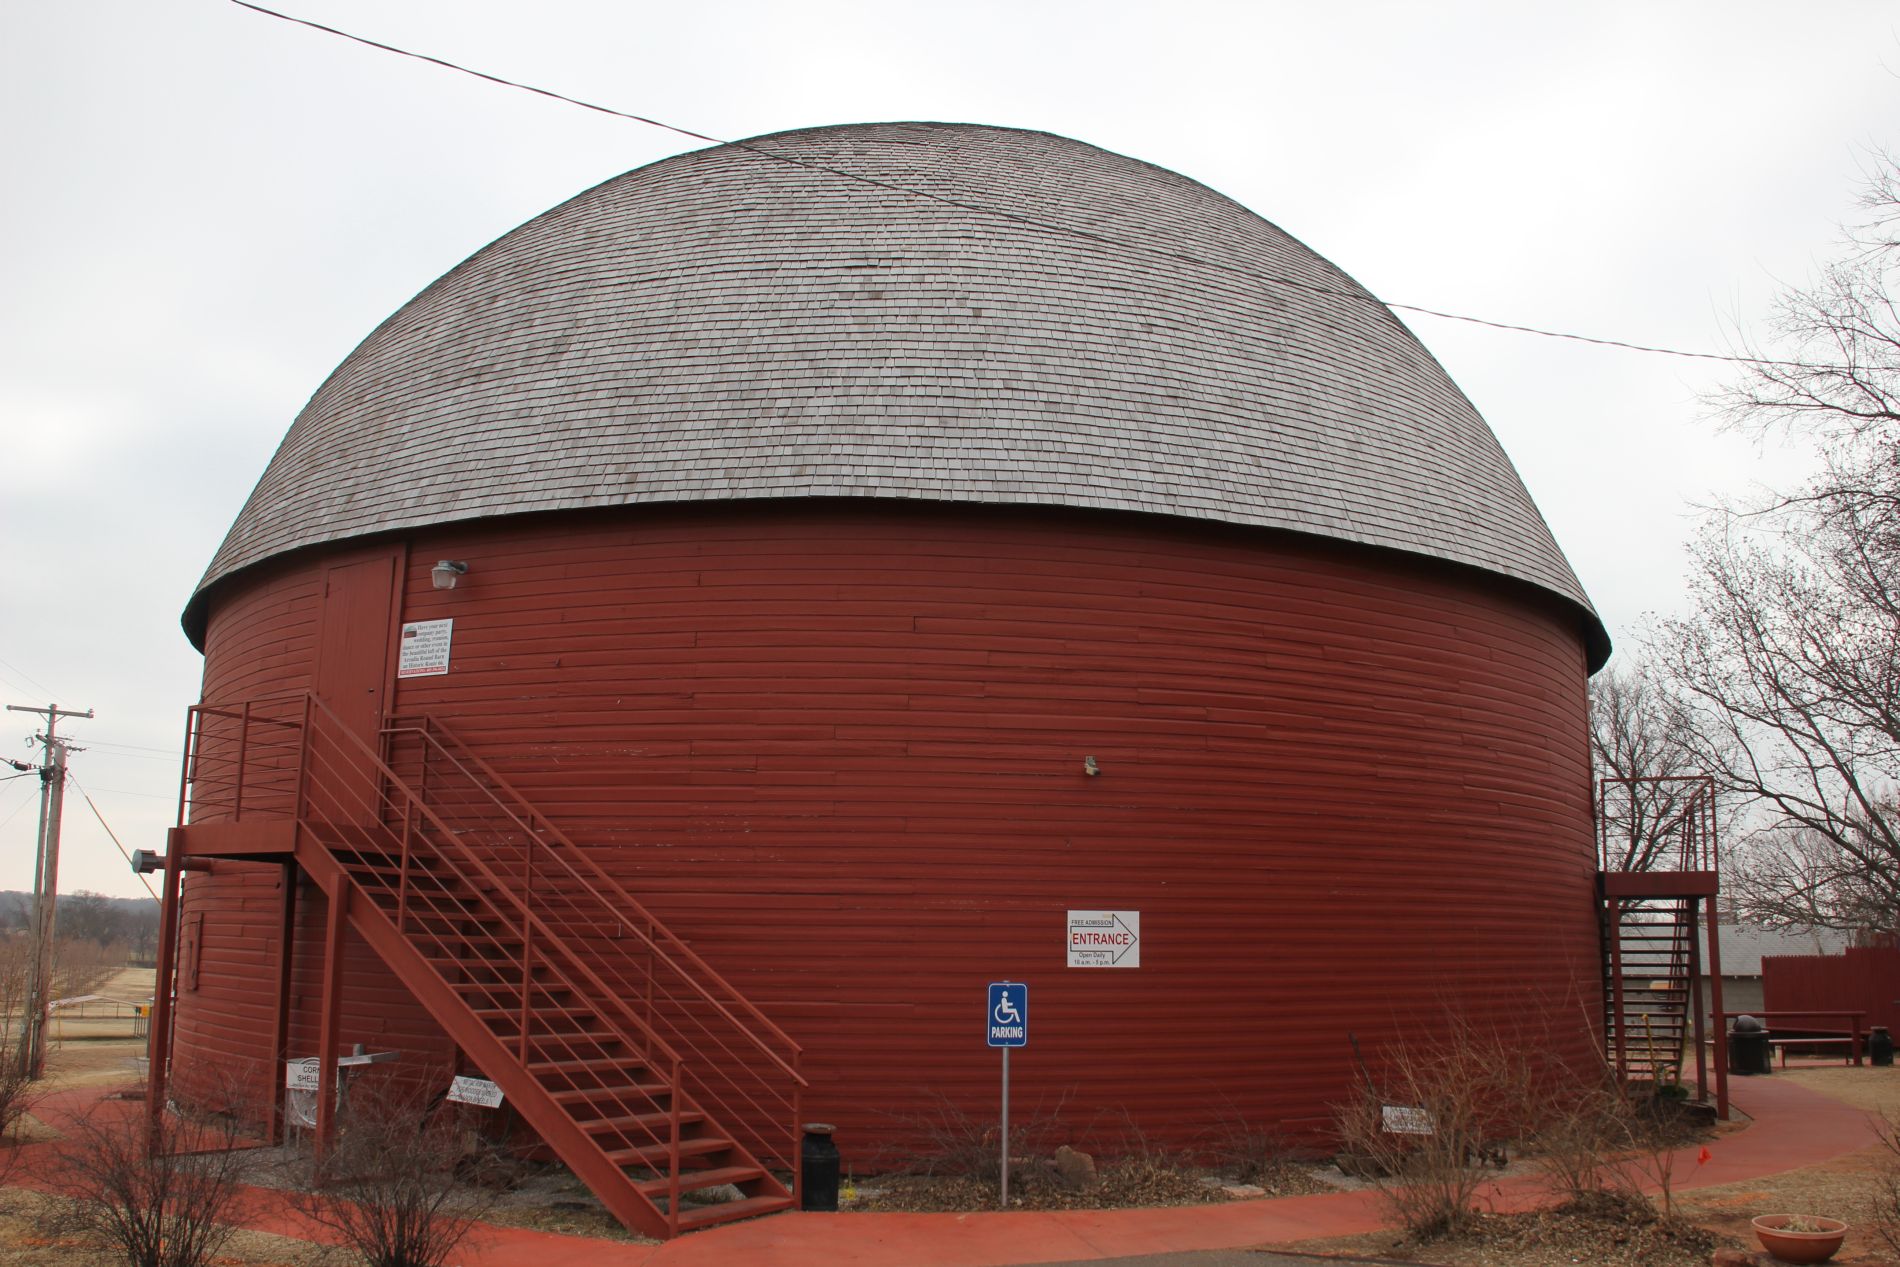 Arcadia Round Barn in Arcadia, Oklahoma